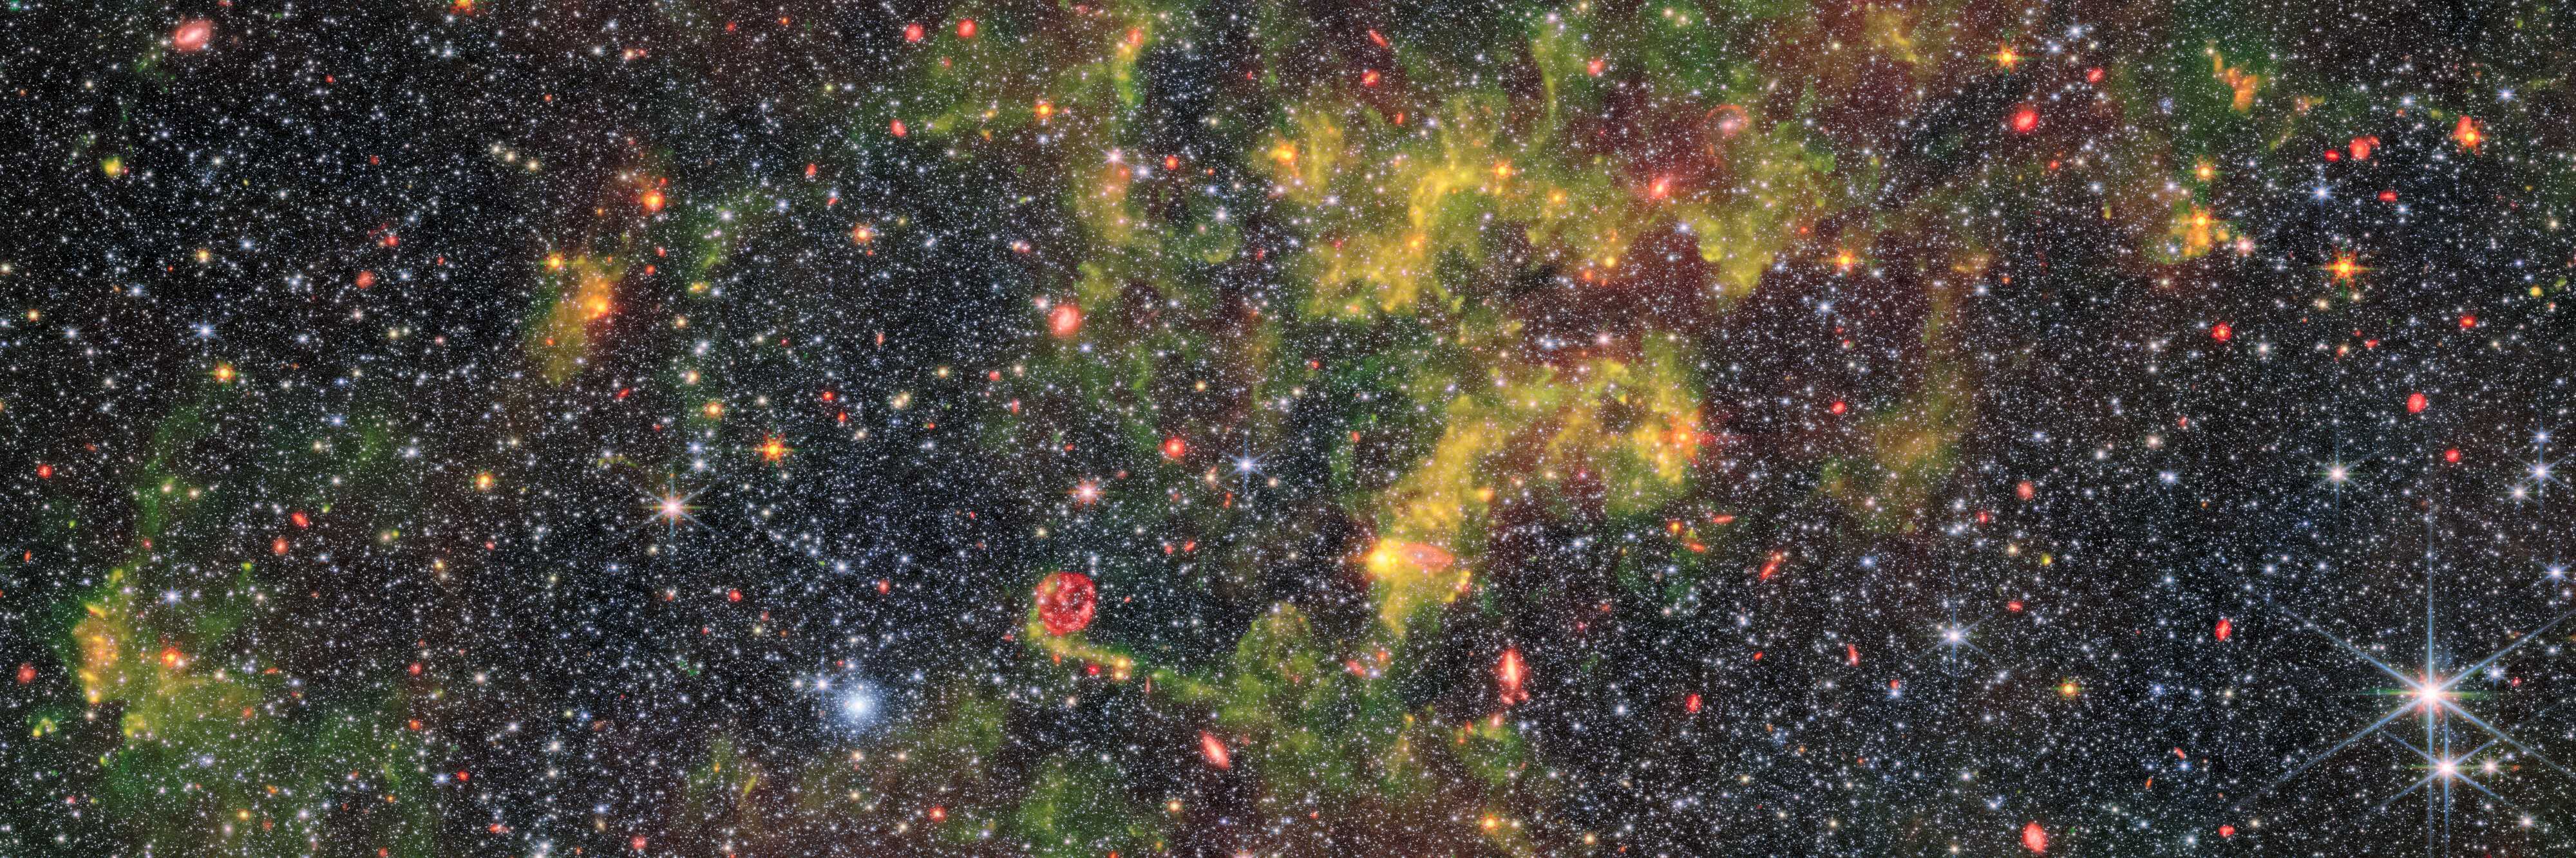 «Джеймс Уэбб» запечатлел облака пыли в галактике NGC 6822